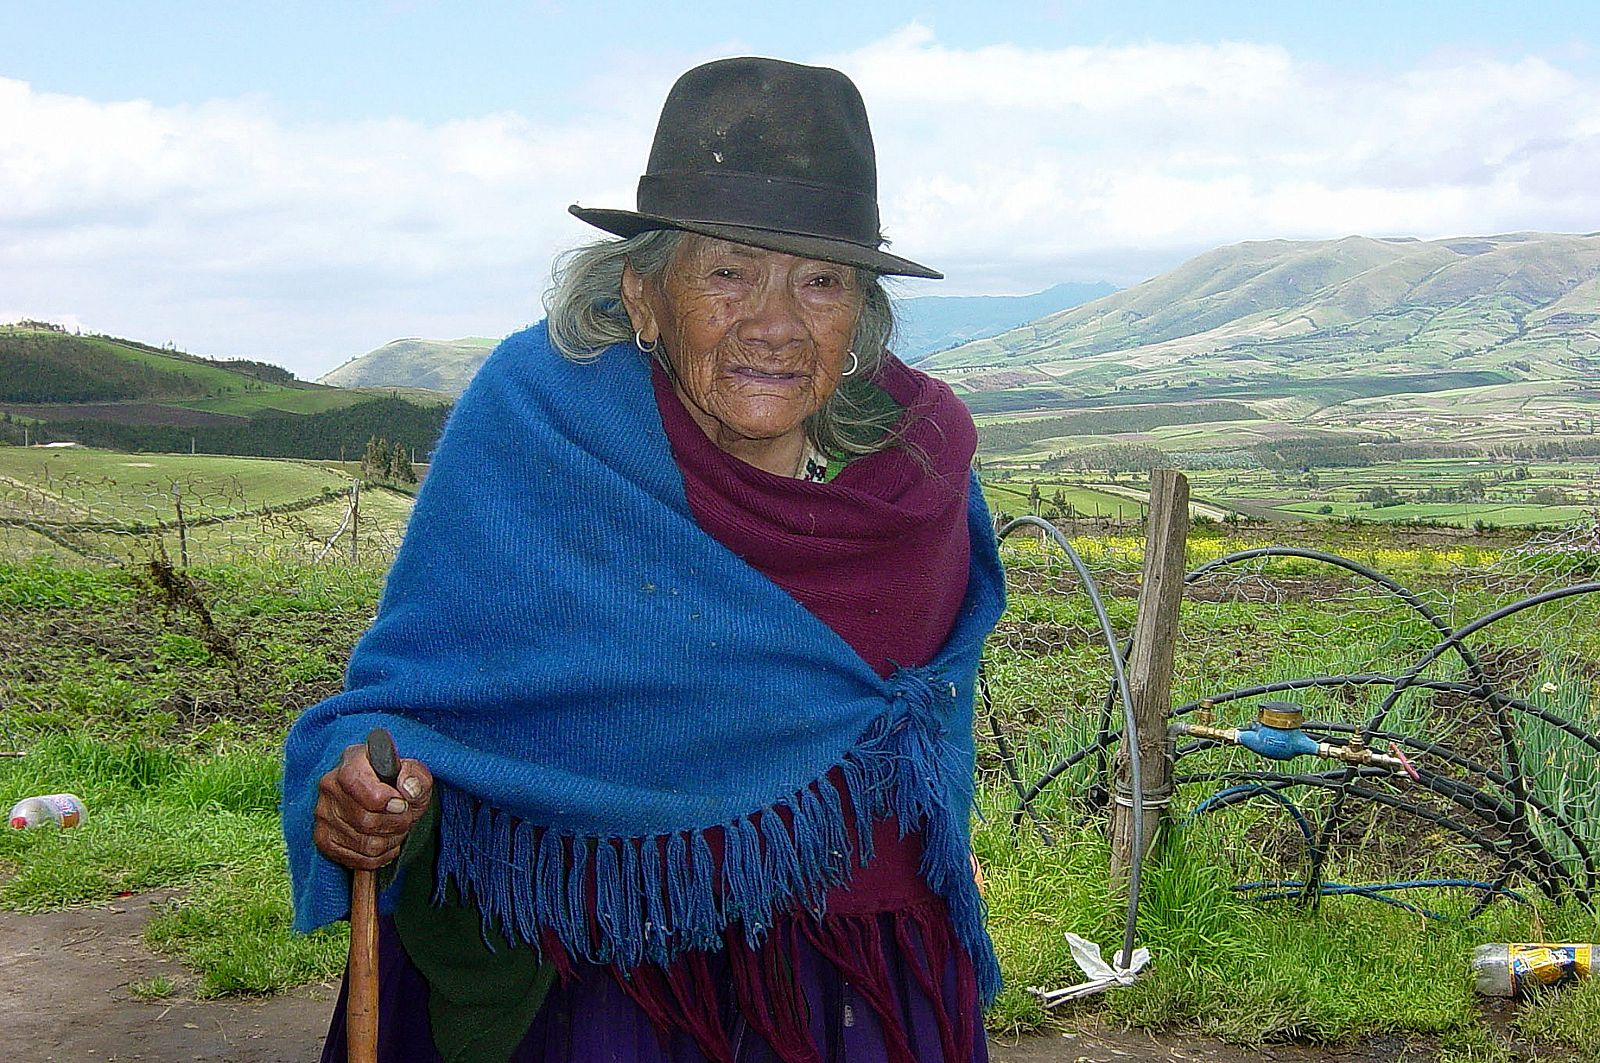 Tránsito Amagueña, defensora de los derechos indígenas en Ecuador, fotografiada en 2004